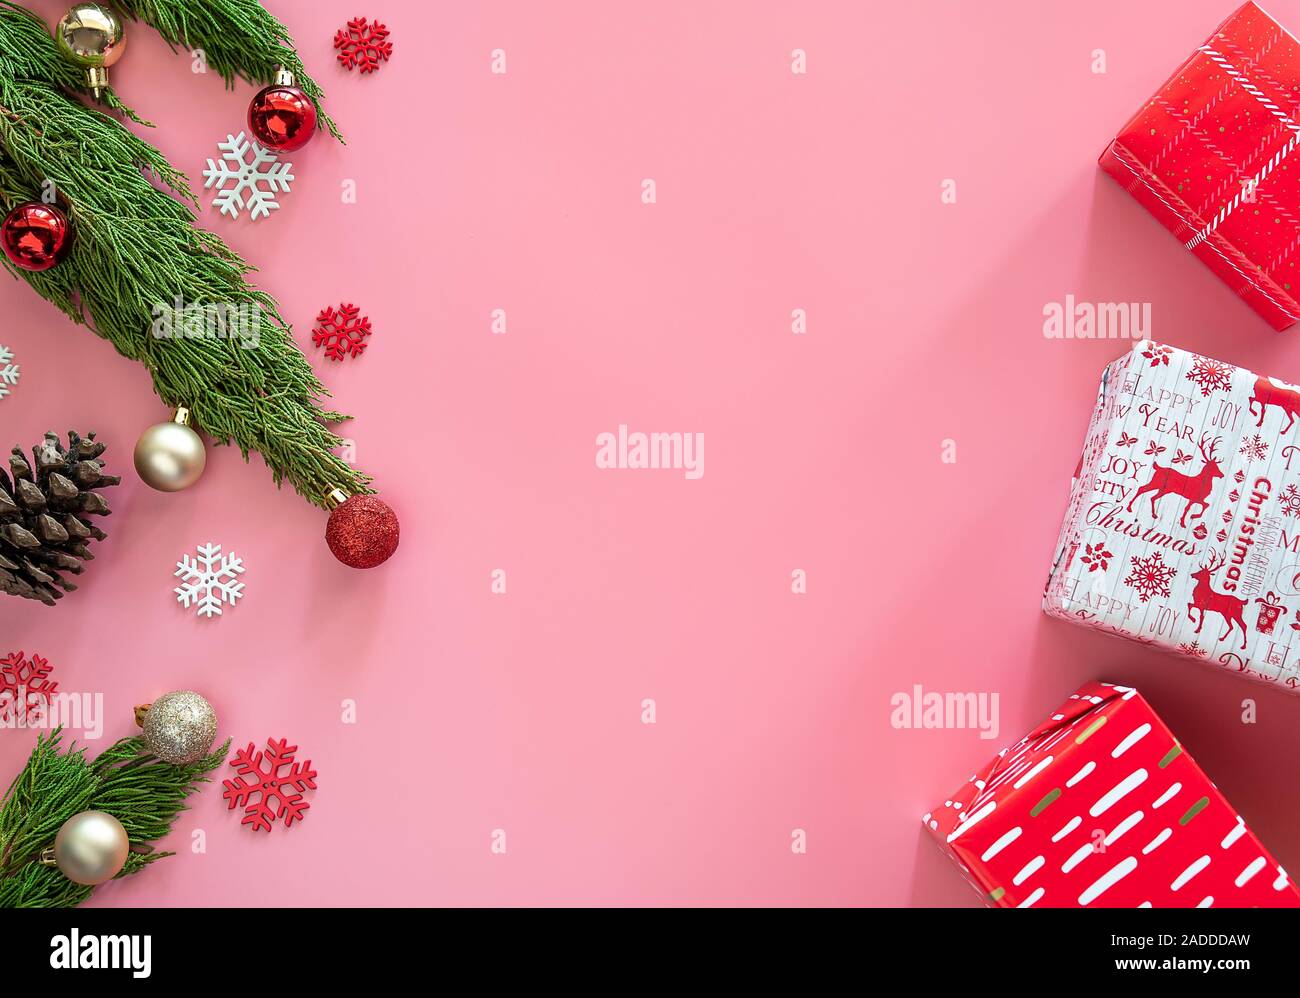 Verde di pini , Pigna , i fiocchi di neve , Natale ornamenti e confezione regalo in rosso avvolgere della carta su sfondo rosa con spazio di copia Foto Stock